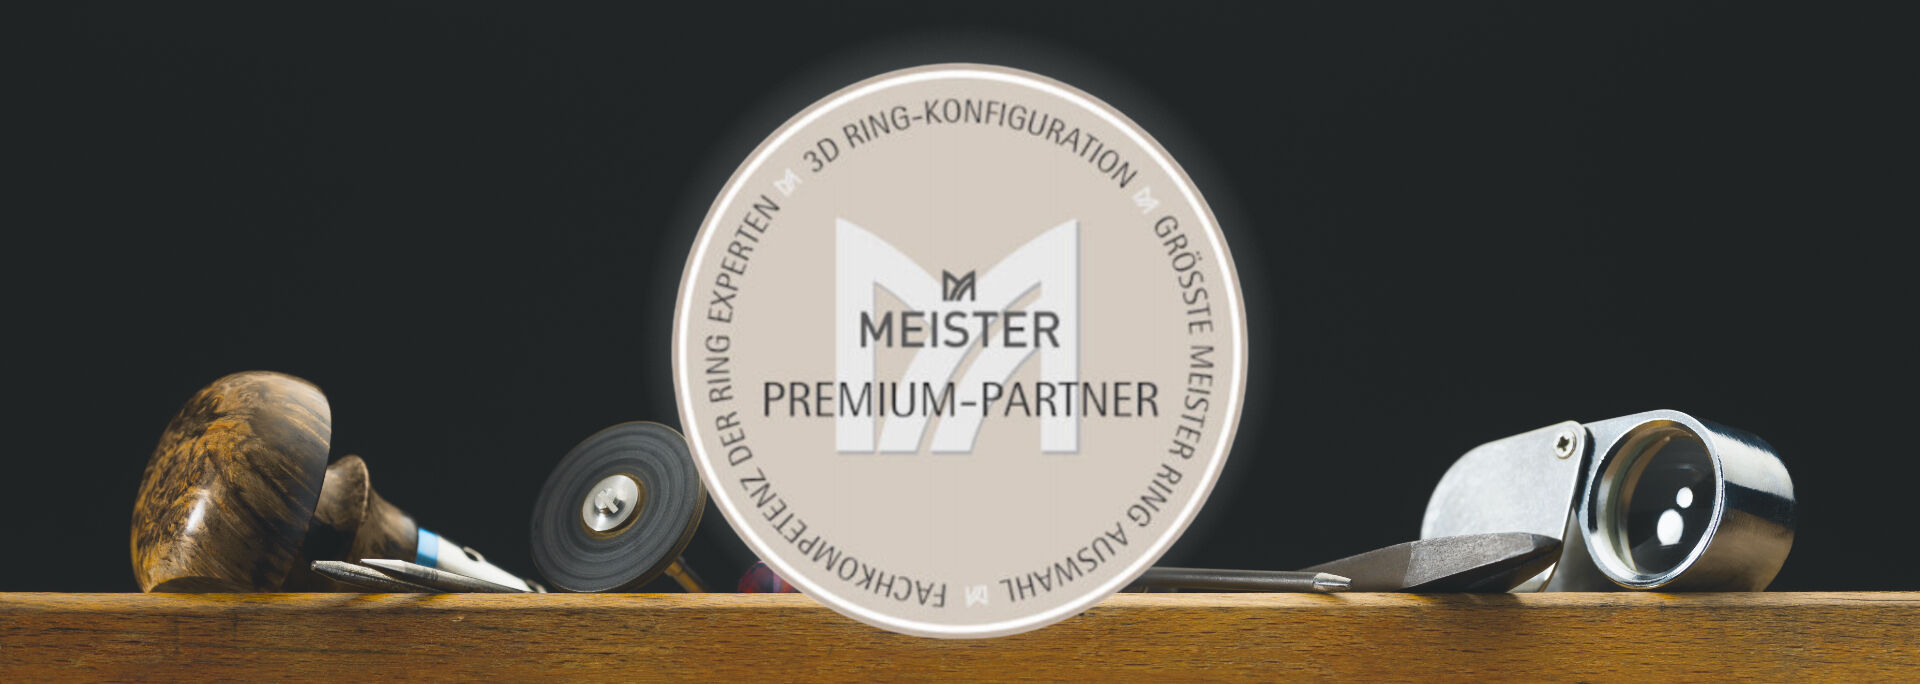 Meister Premiumpartner